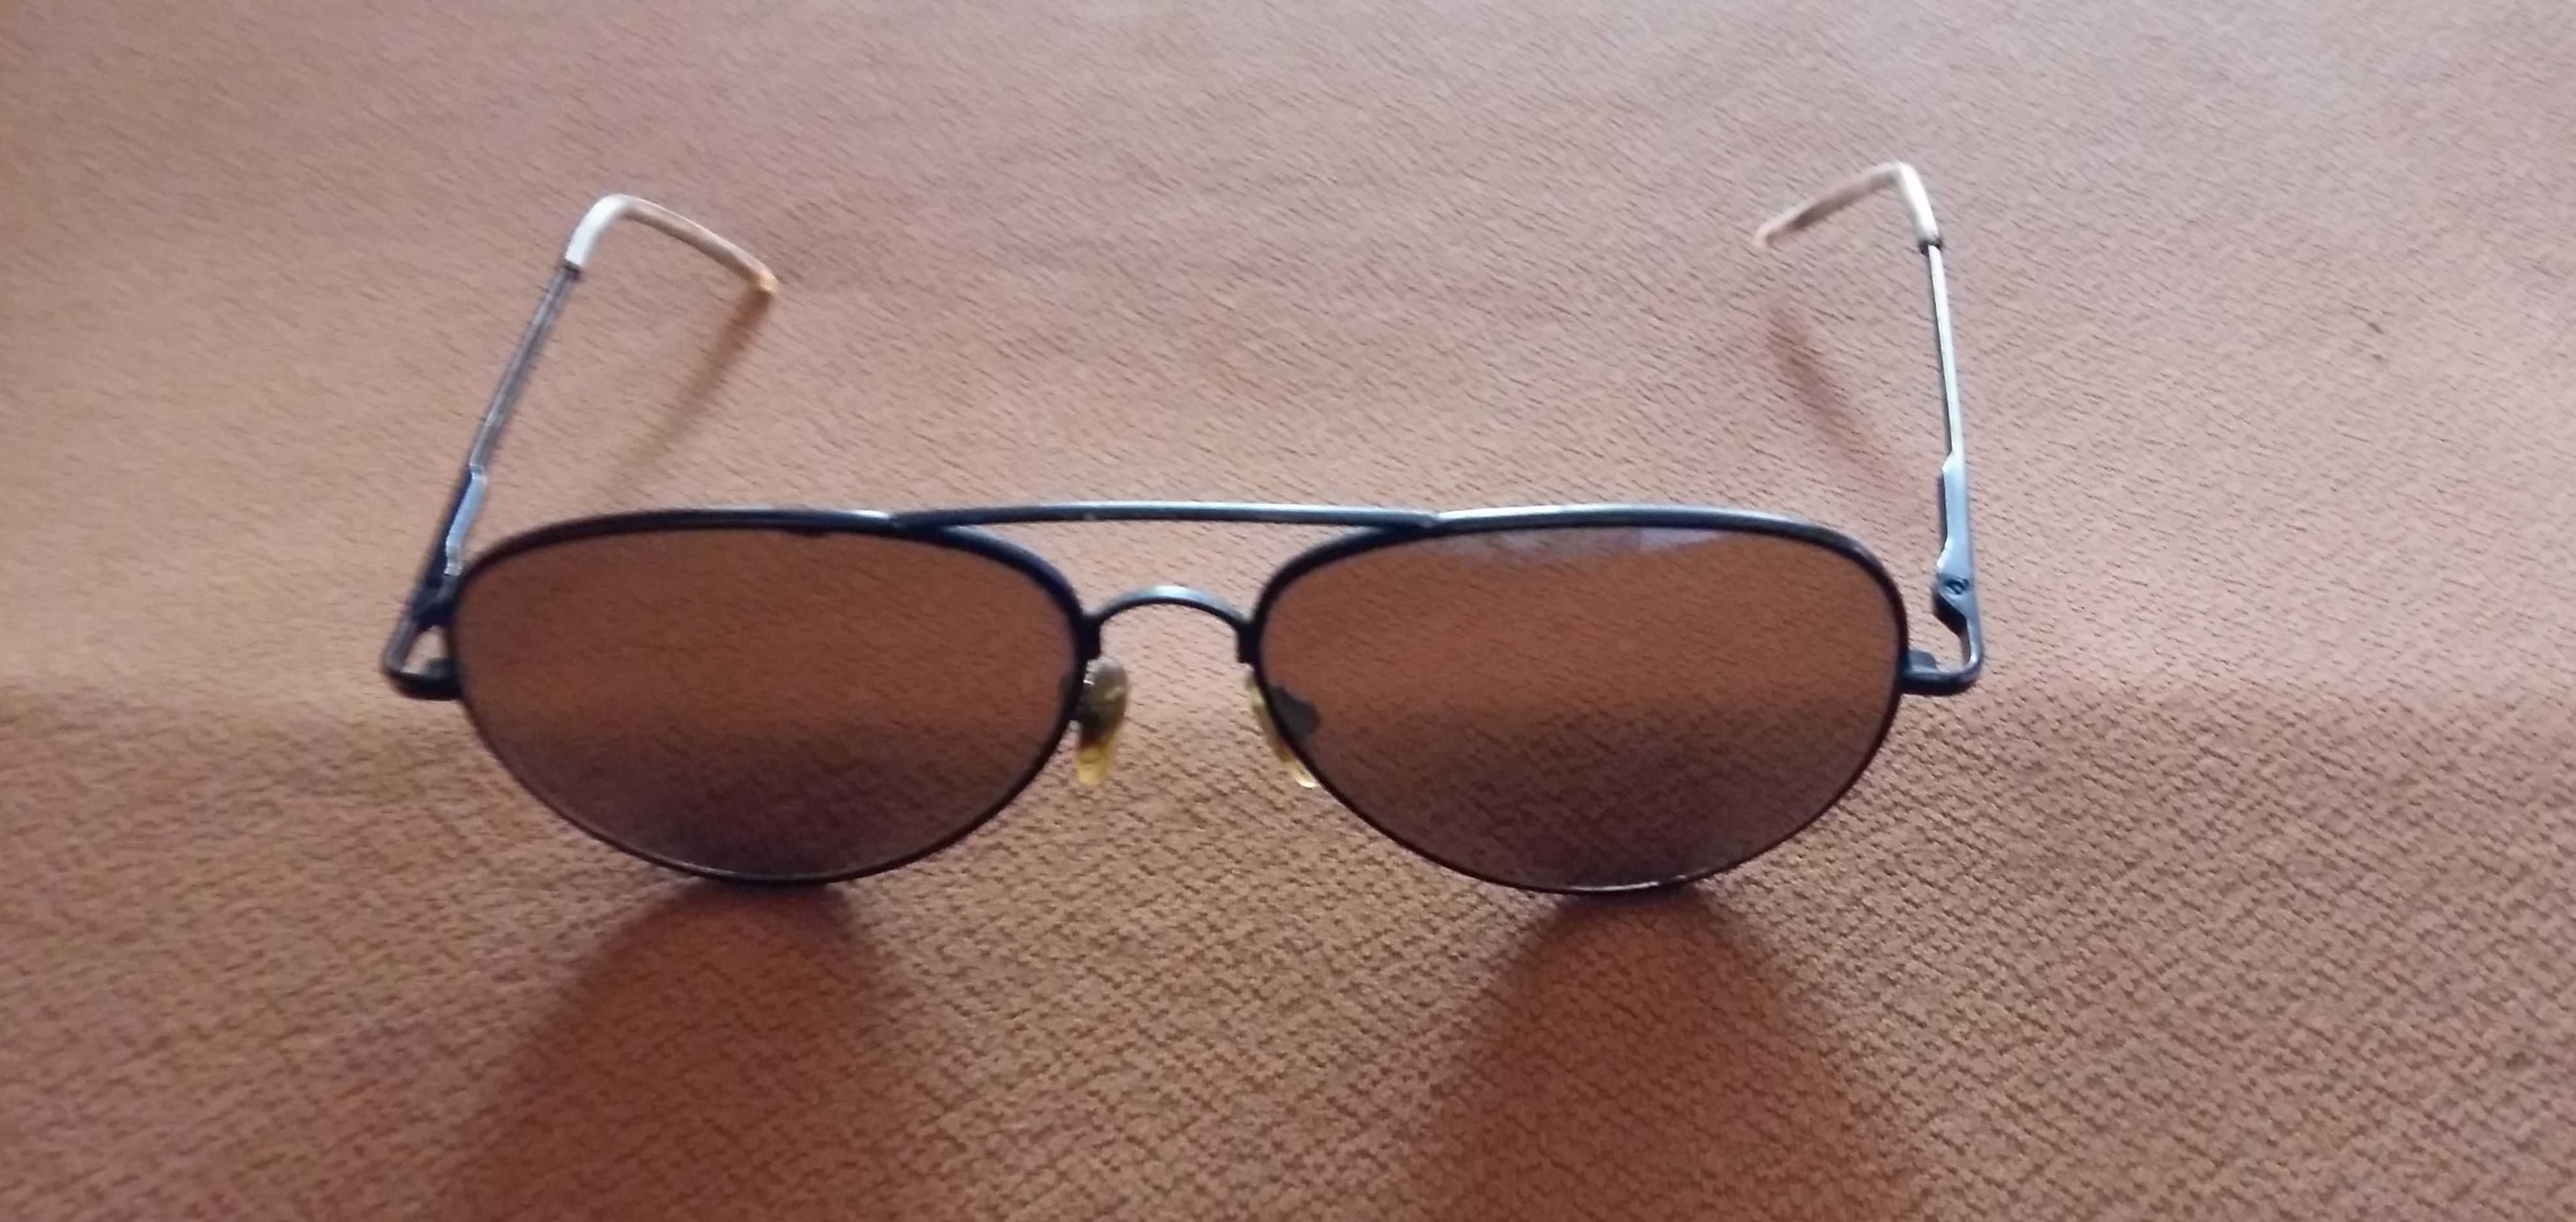 Okulary męskie przeciwsłoneczne w metalowej wąskiej ramce.